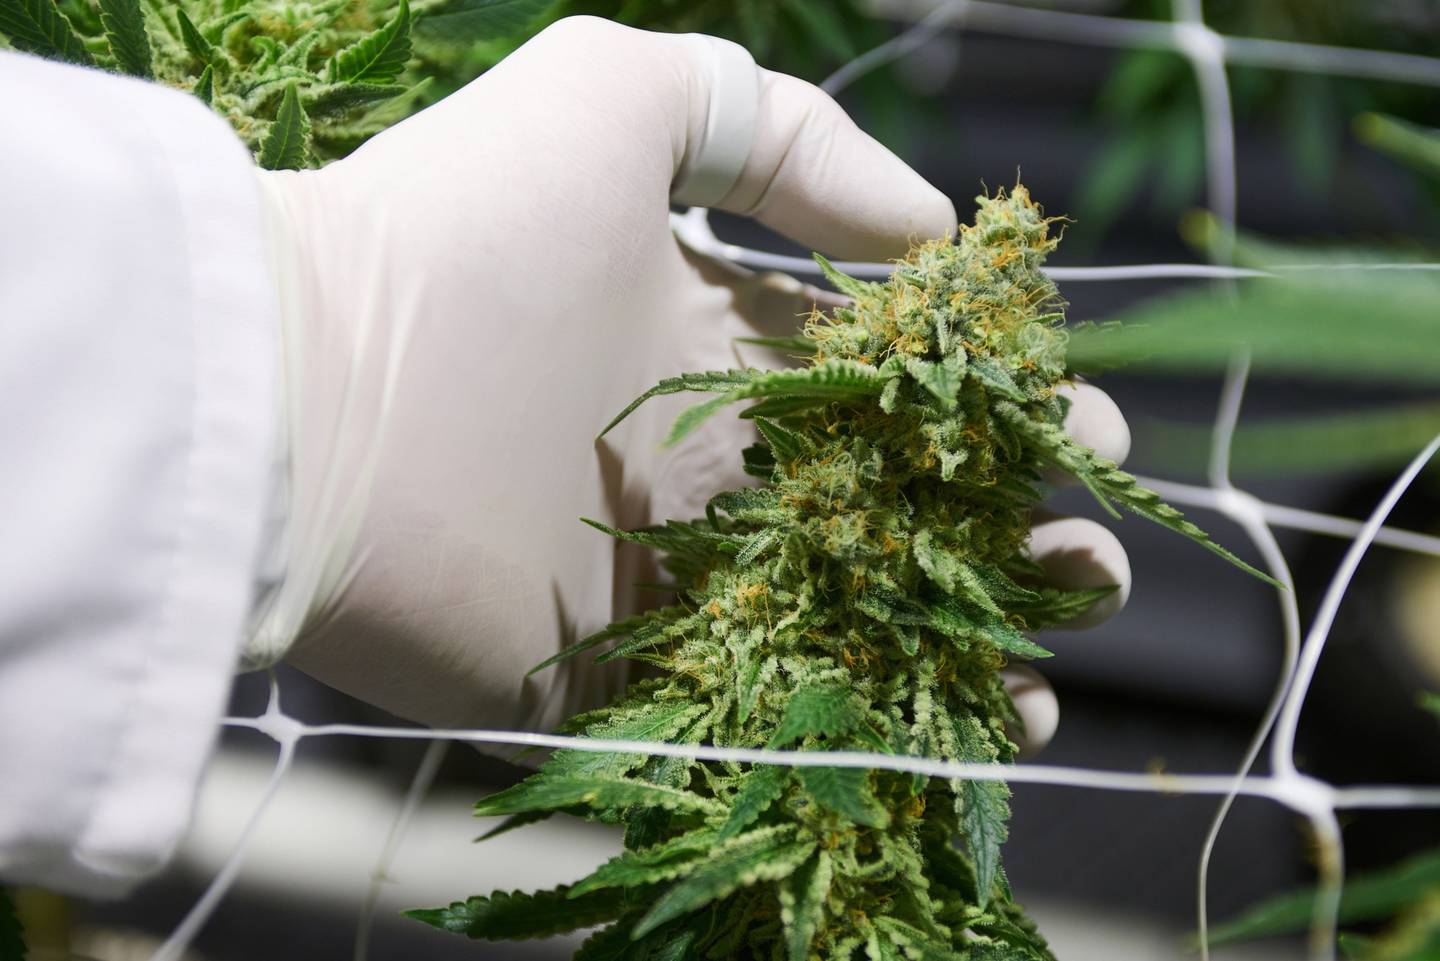 Un trabajador inspecciona una planta de cannabis en flor dentro de un cuarto de cultivo. Fotógrafo: Waldo Swiegers/Bloomberg